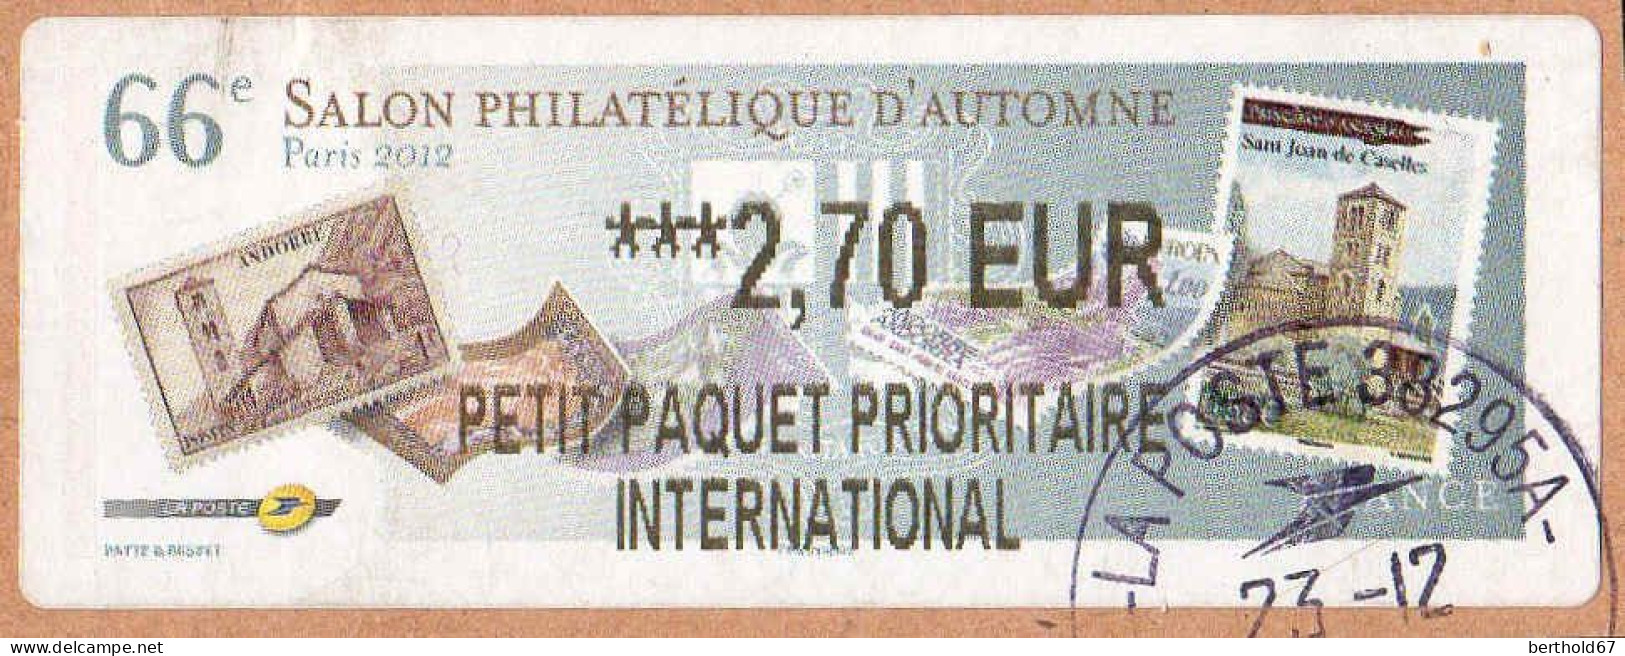 France Lisa Obl 2001 Salon Philatélique D'Automne (TB Cachet Rond) ***2,70 EUR Sur Fragment - 2010-... Geïllustreerde Frankeervignetten